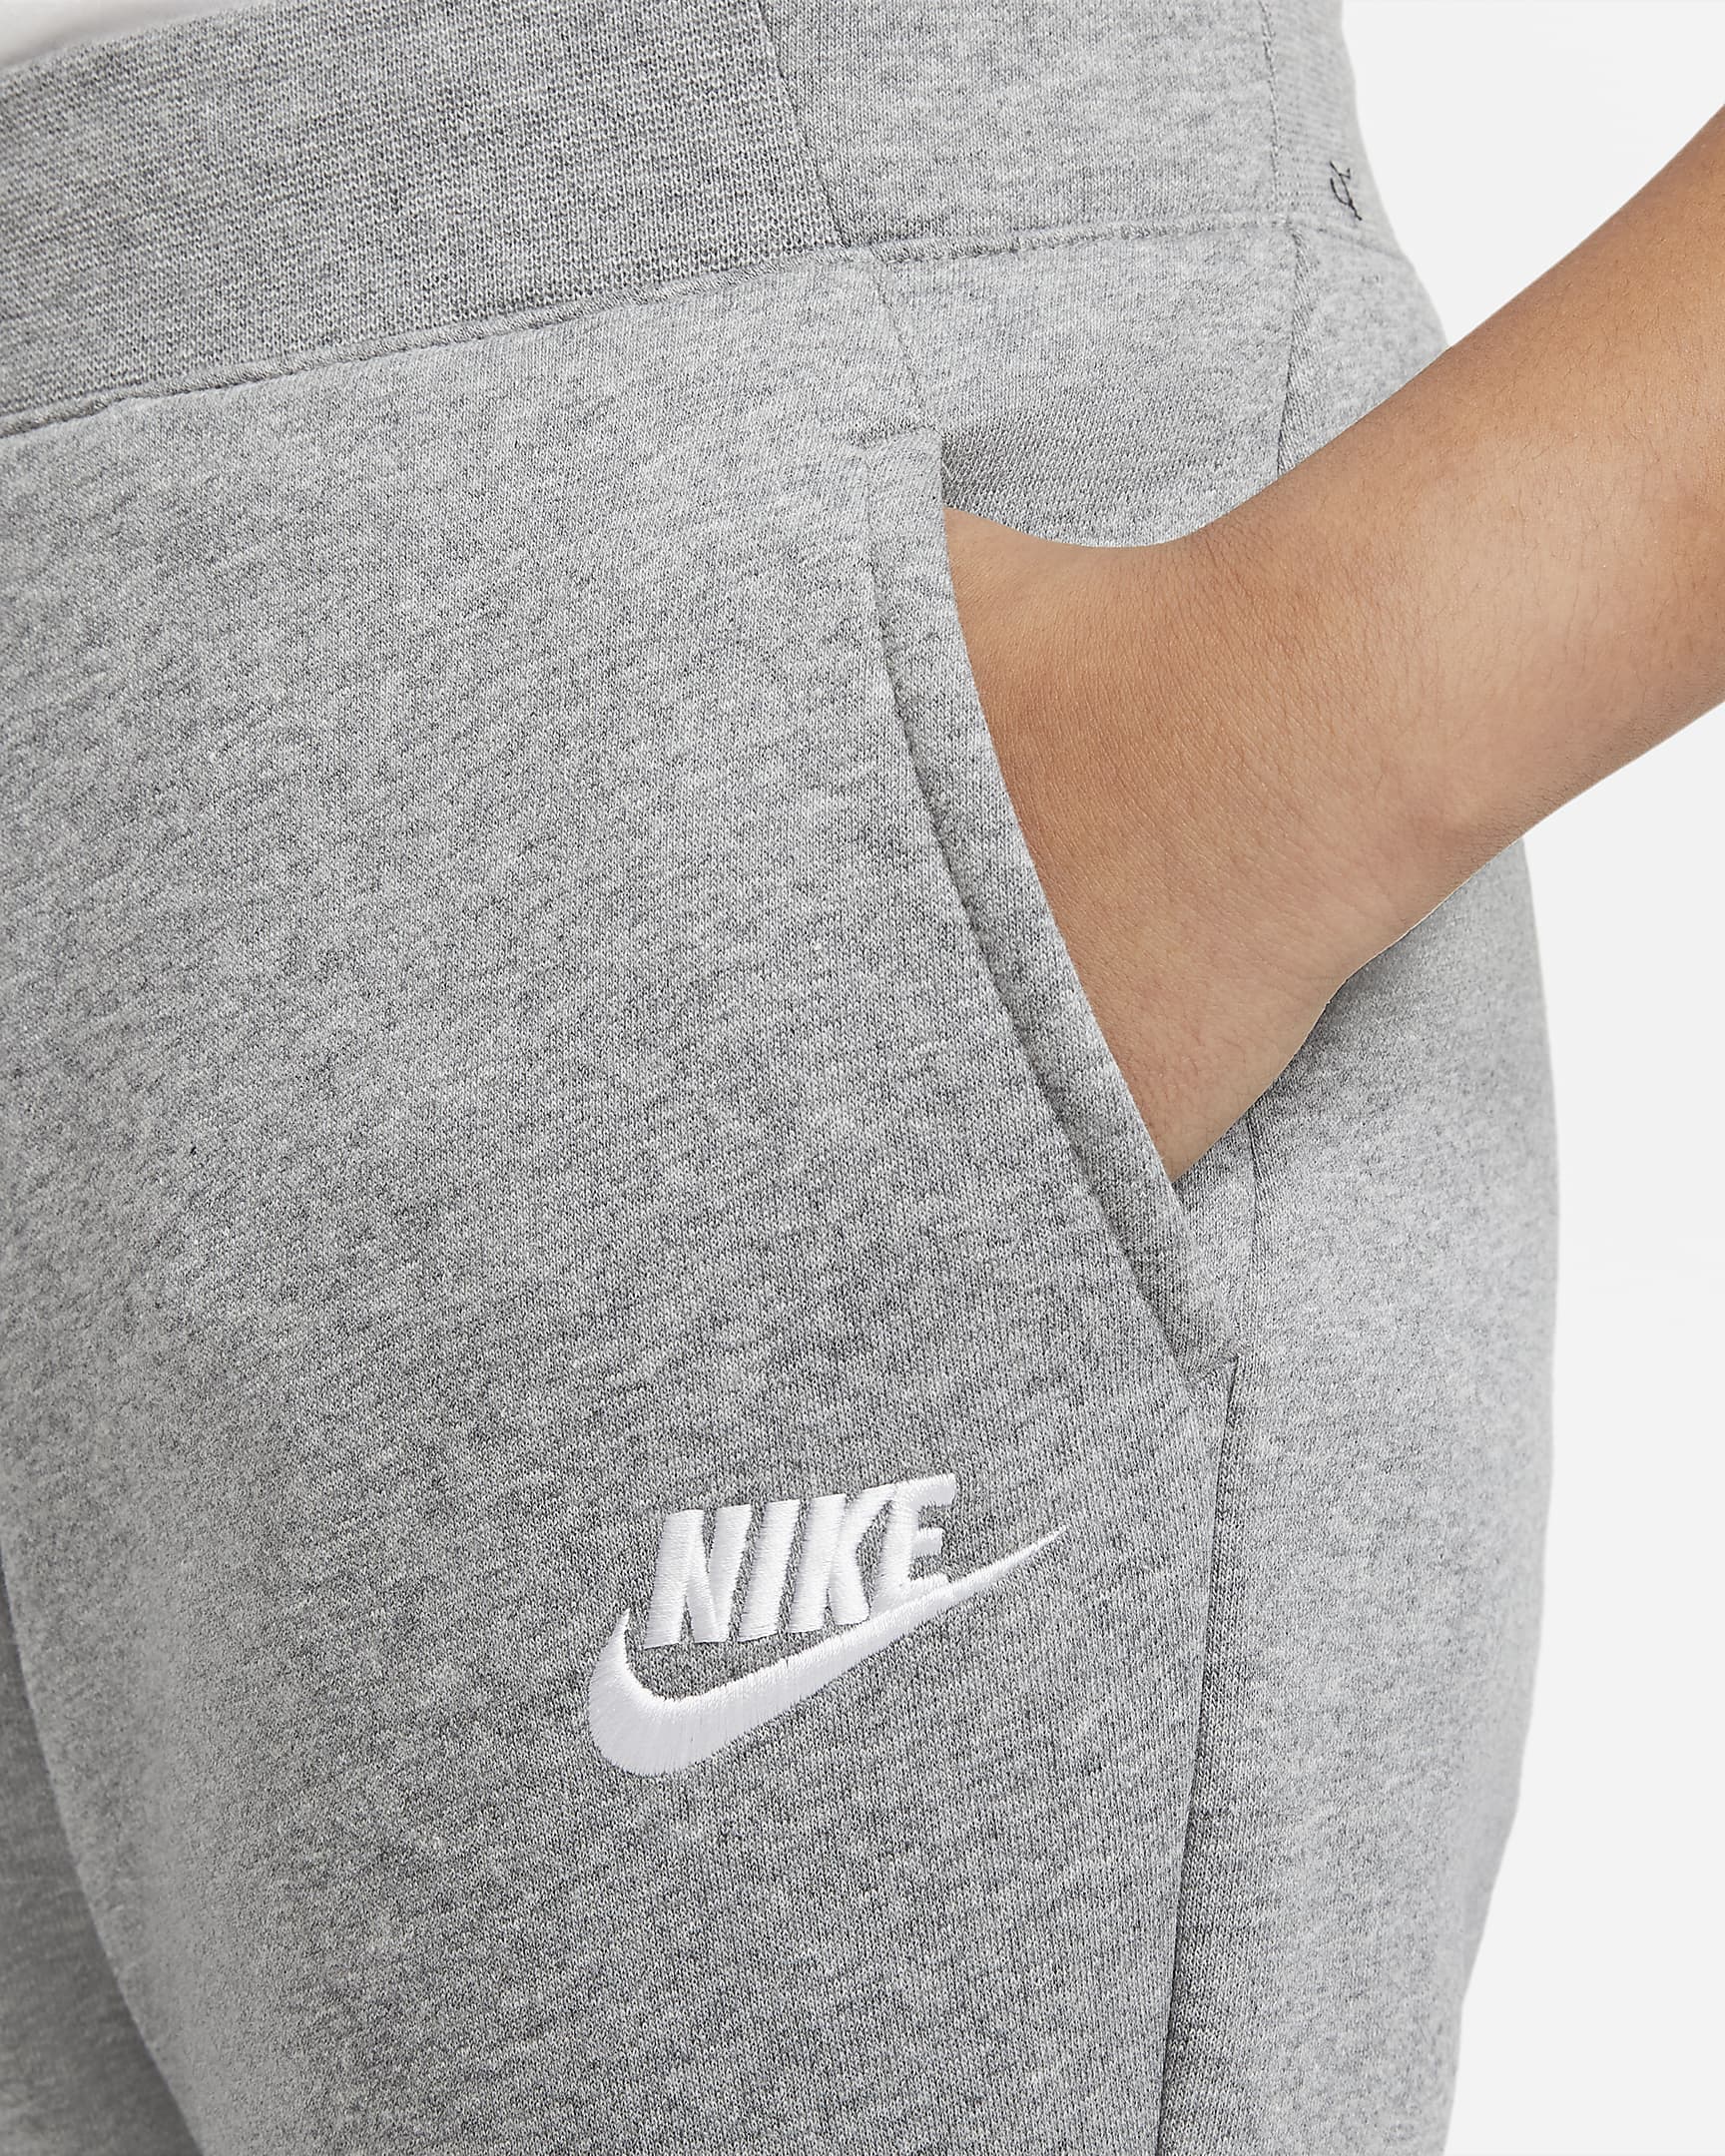 Nike Sportswear Older Kids' (Girls') Trousers (Extended Size). Nike UK